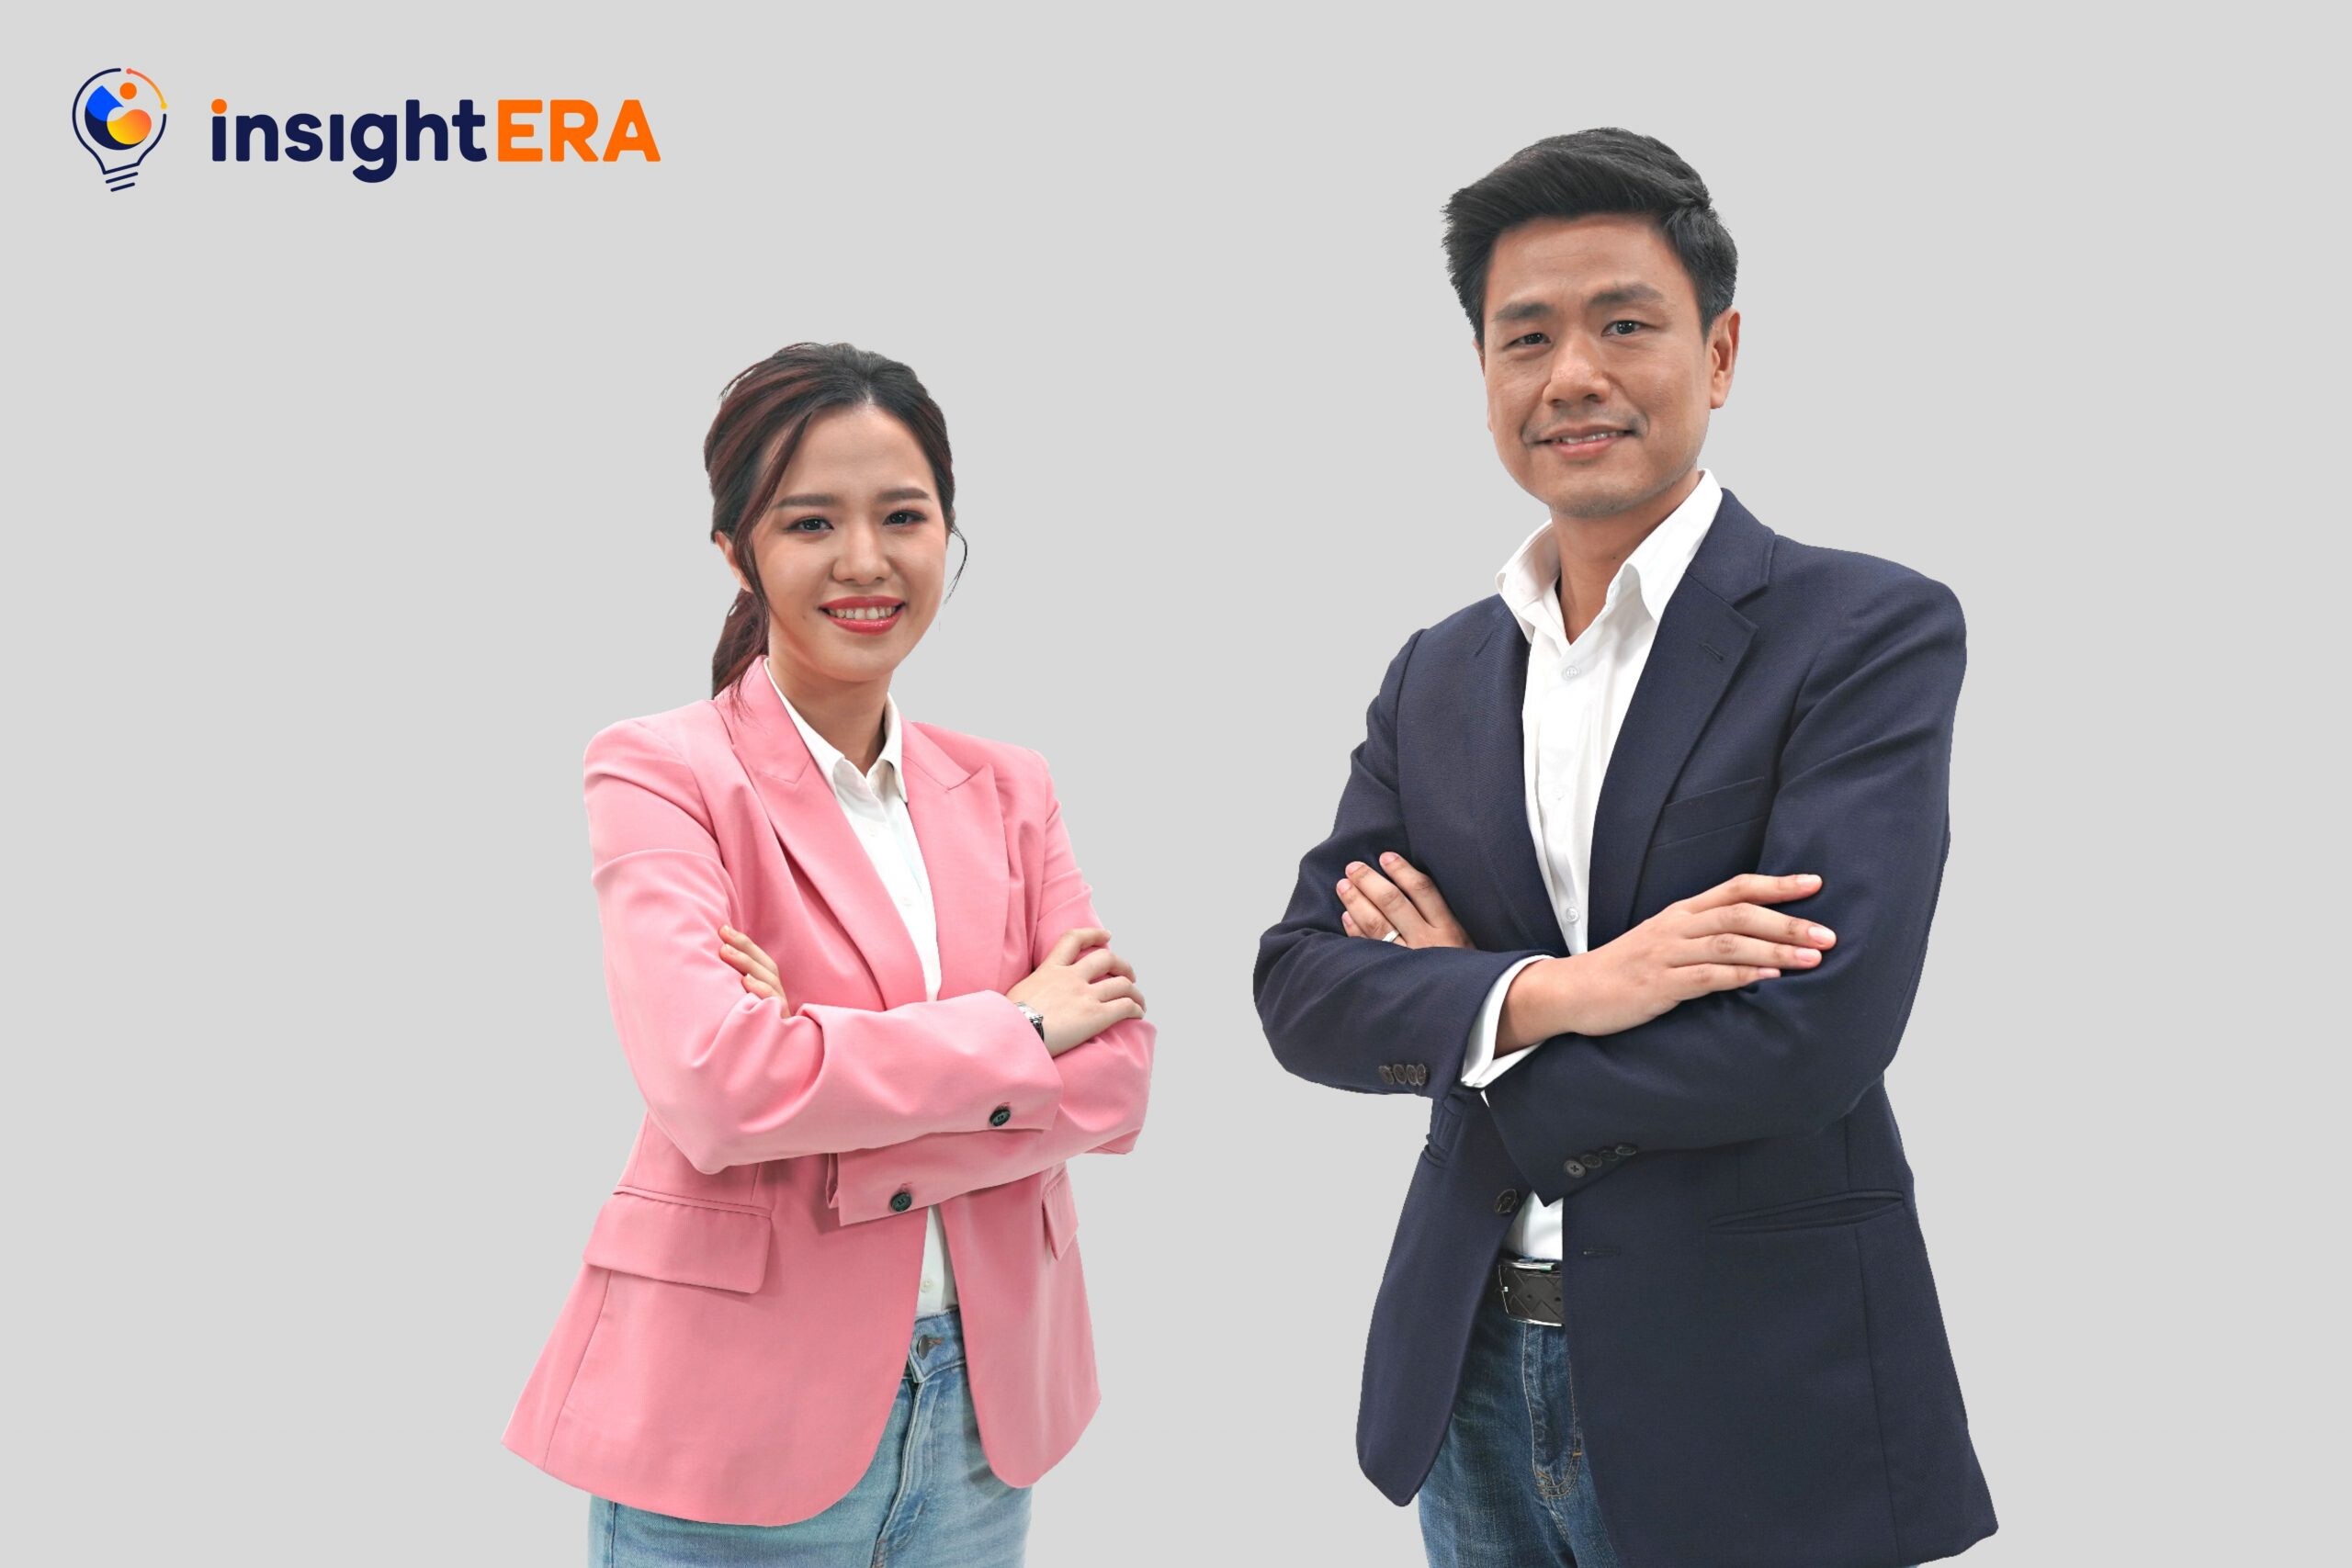 "อินไซท์เอรา" มุ่งเสริมศักยภาพธุรกิจไทยในยุคการตลาดดิจิทัล ด้วยโซลูชัน MarTech แบบครบวงจร พร้อมตั้งเป้าเติบโตมากกว่า 100%